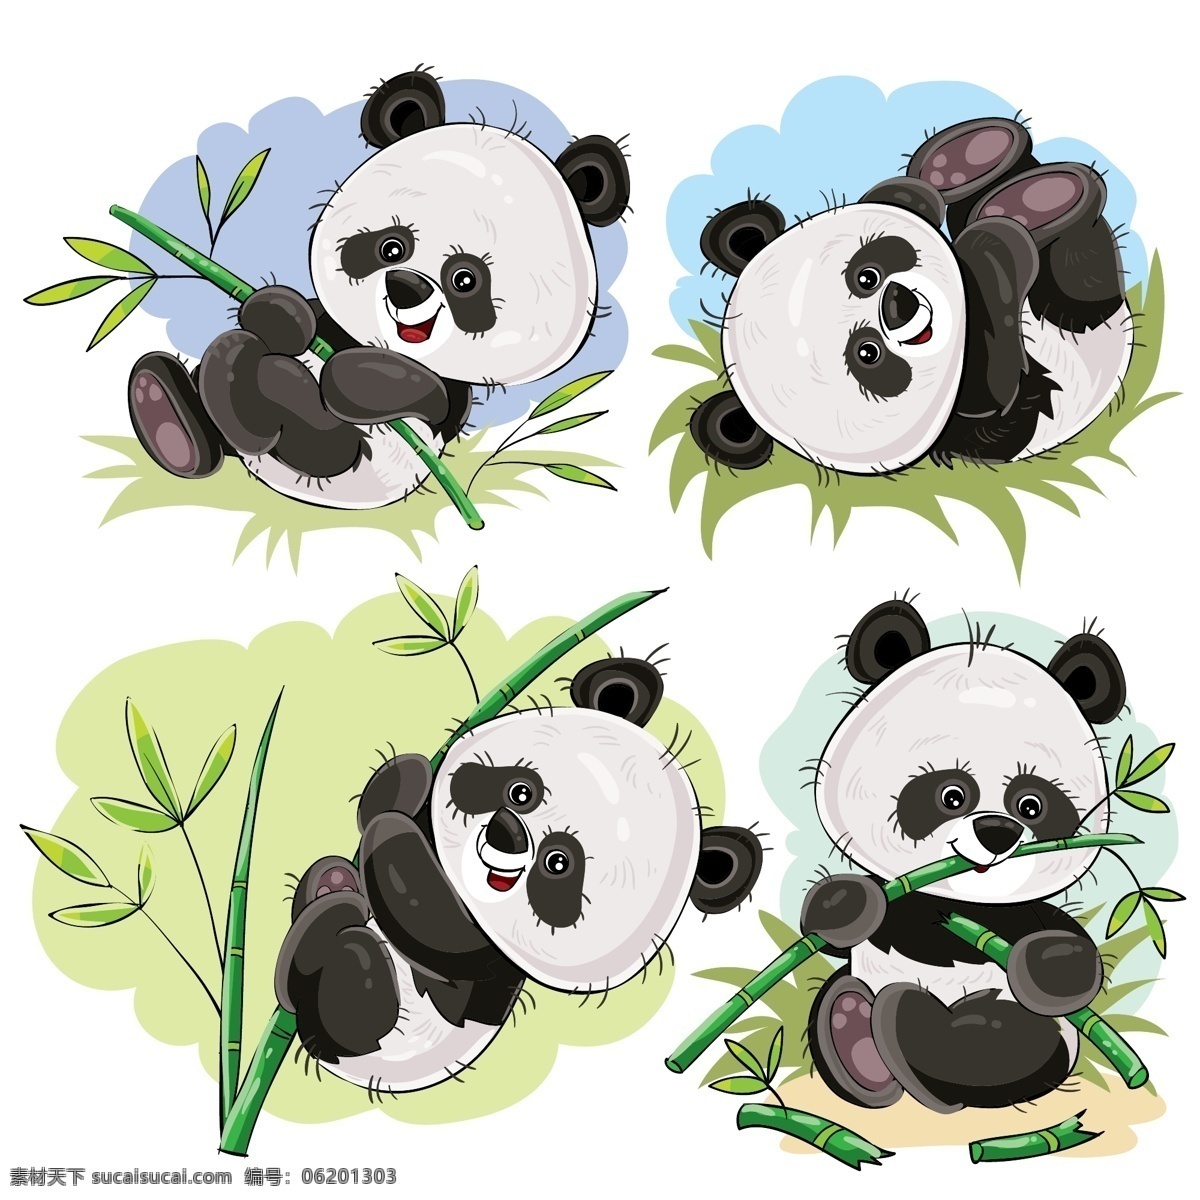 熊猫 熊猫吃竹子 竹子 可爱熊猫 国宝 矢量熊猫 矢量大熊猫